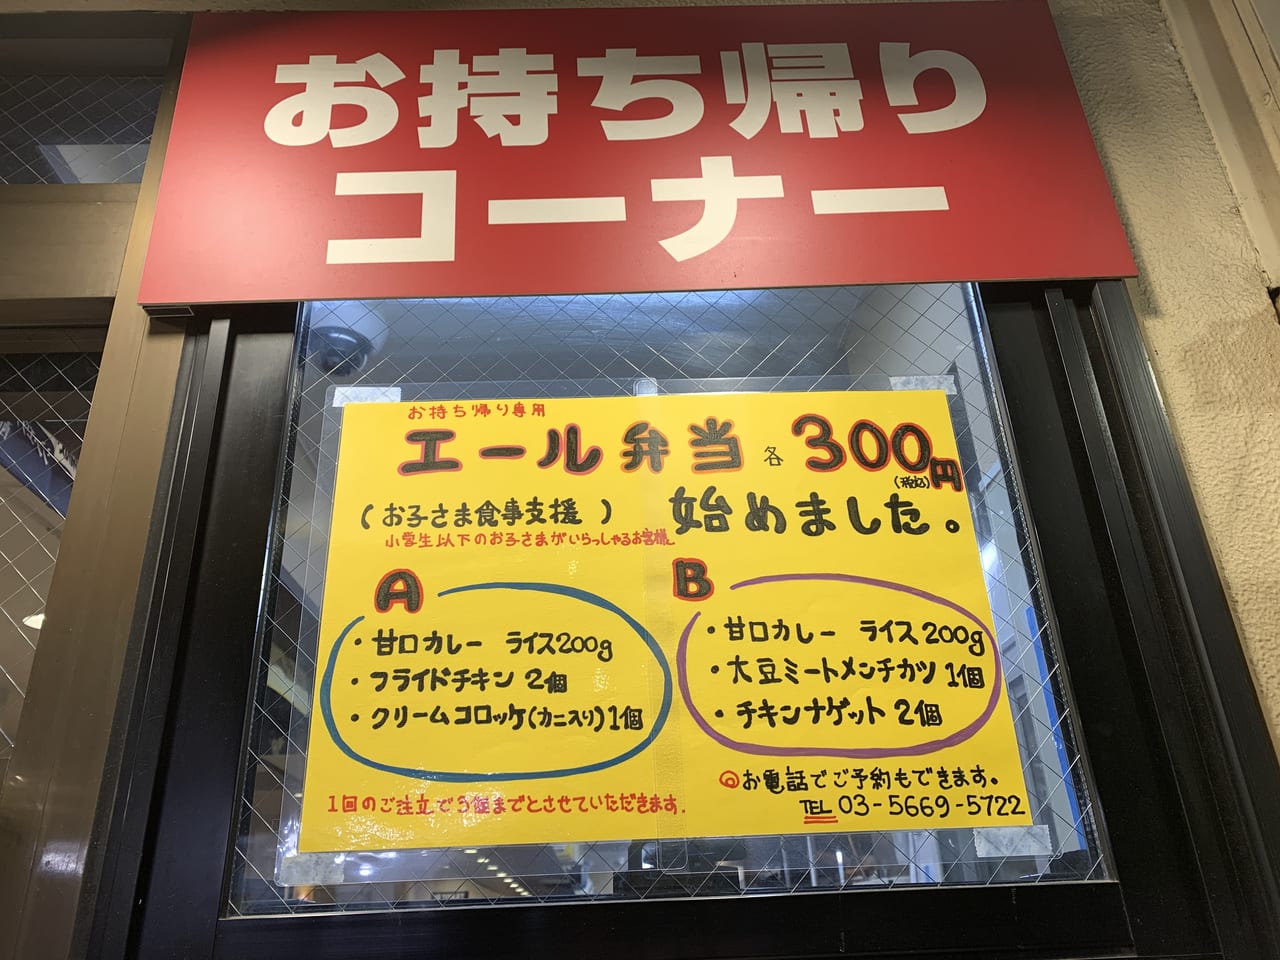 墨田区 カレーのココイチがお子様食事支援で エール弁当 を300円で販売中 号外net 墨田区